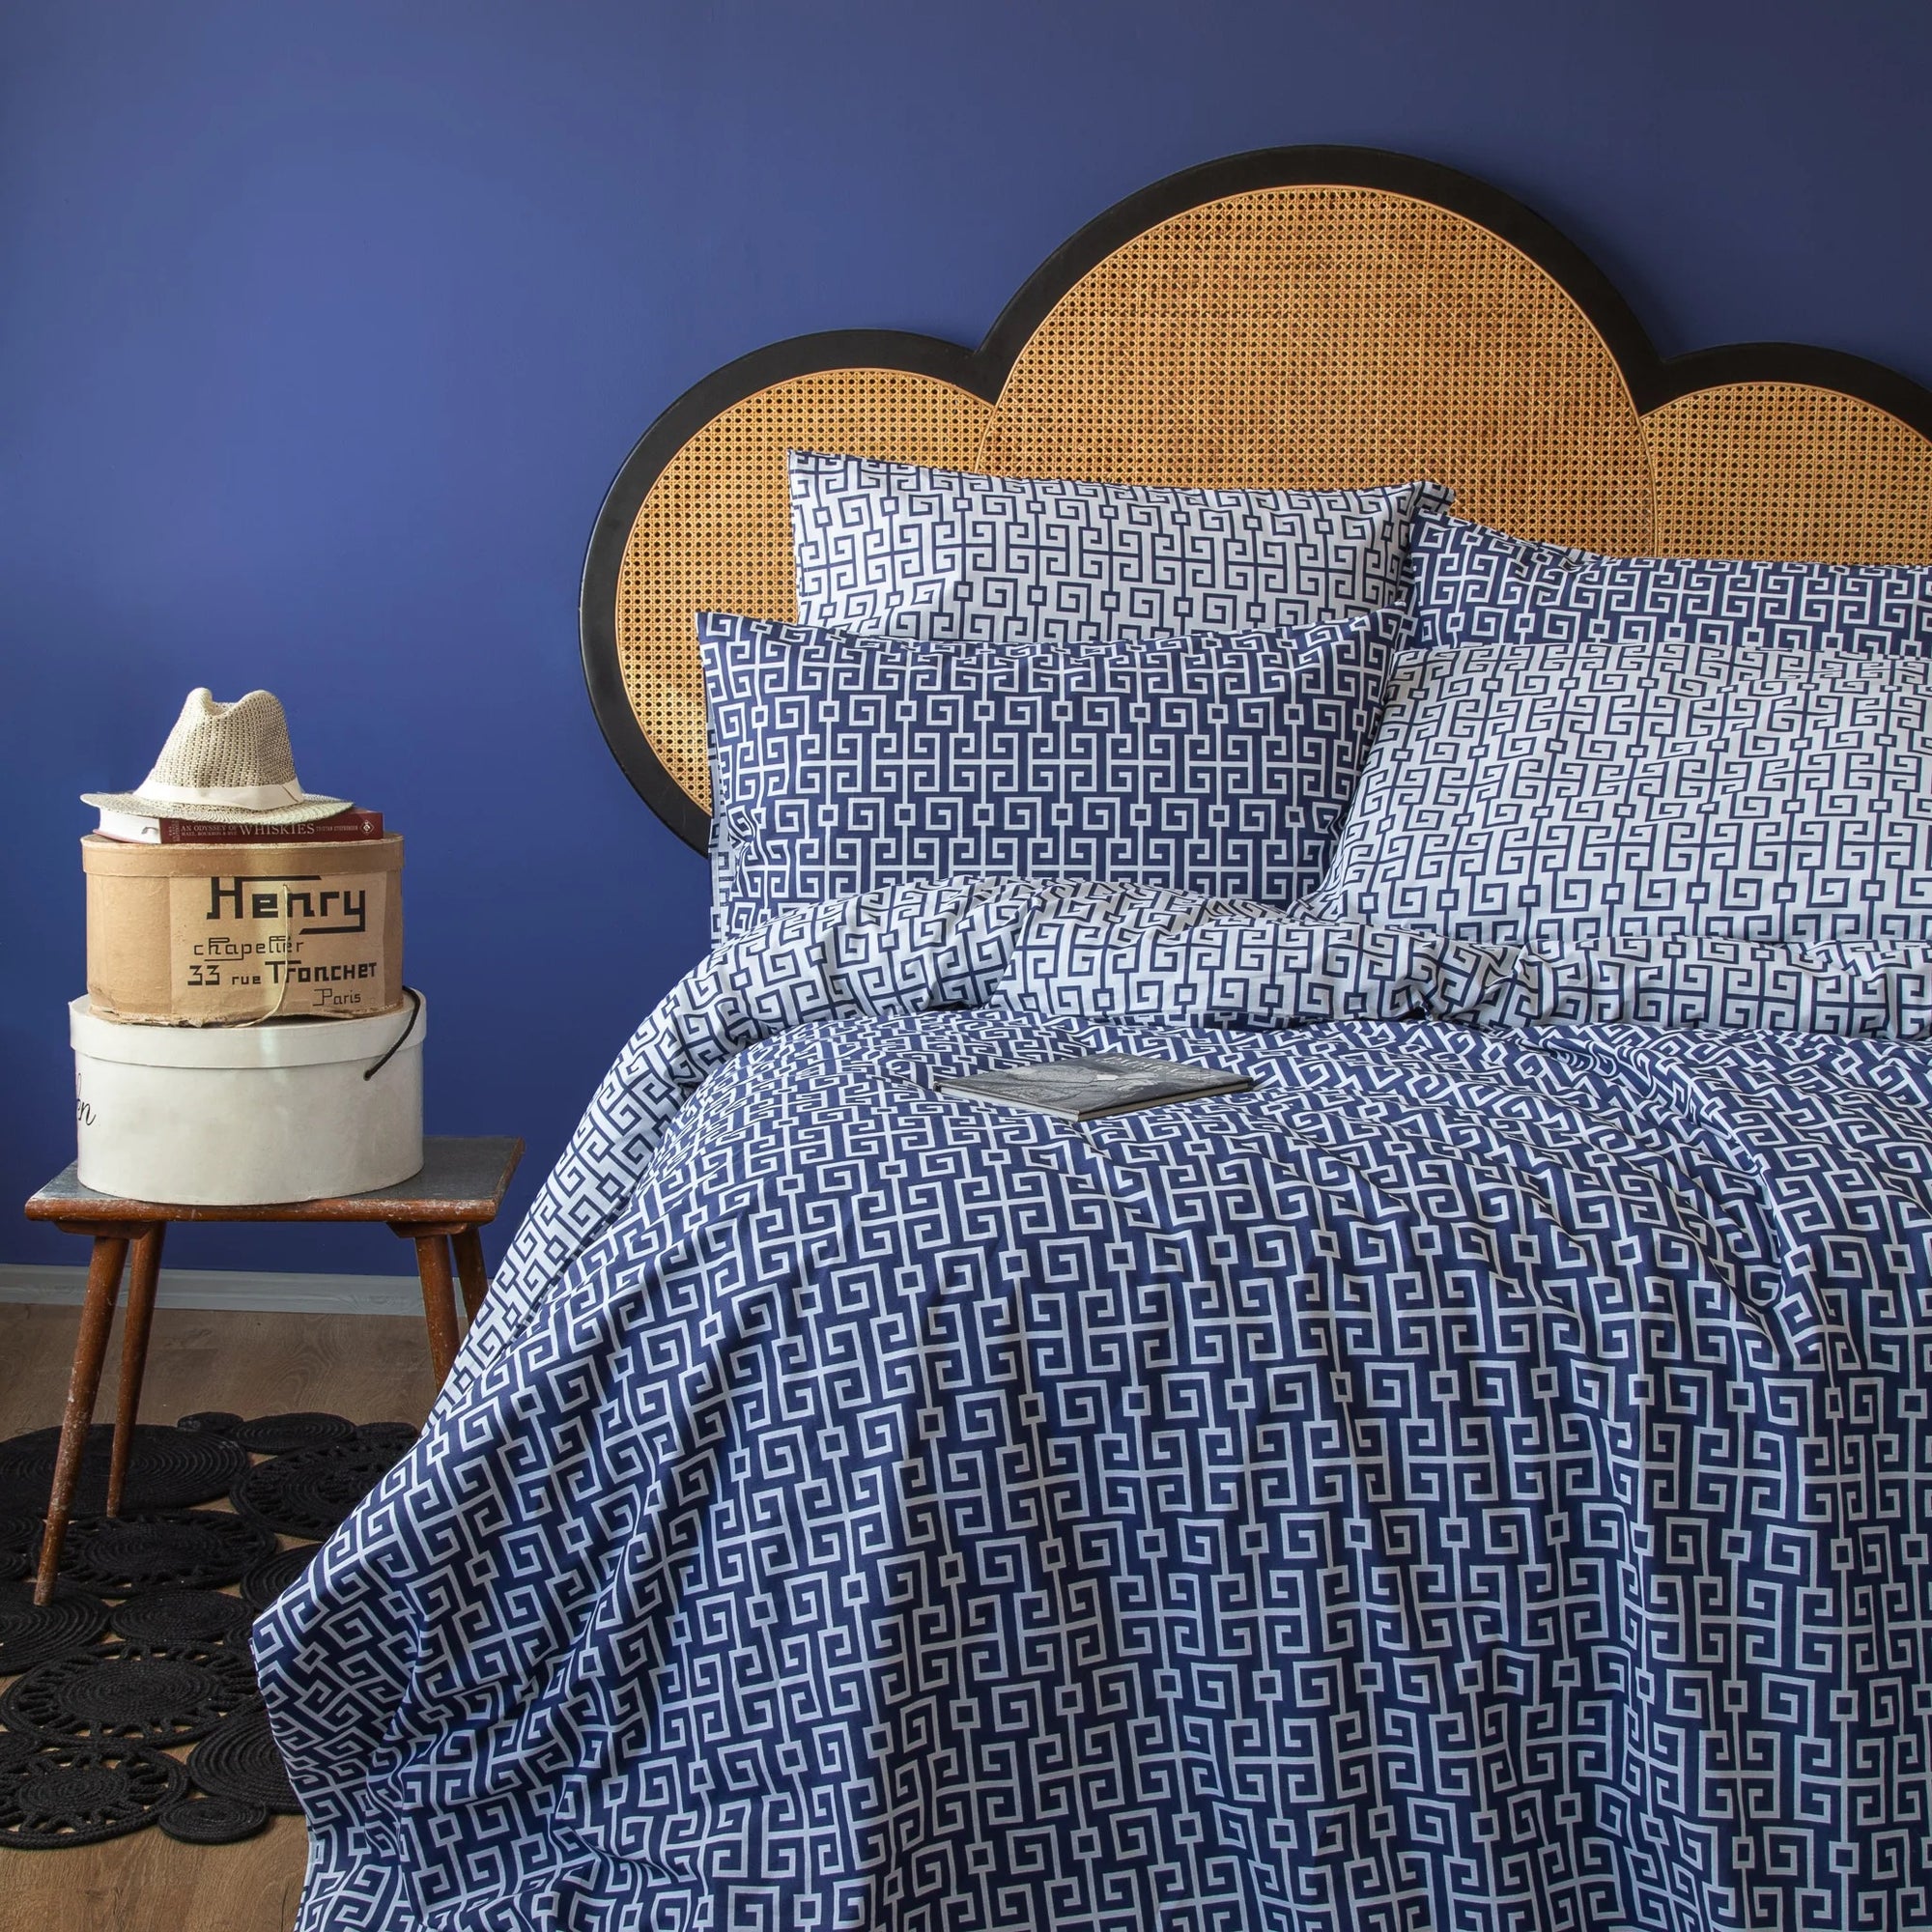 Edles Bettwäsche-Set aus griechischer Baumwolle in Marineblau mit Bettbezug